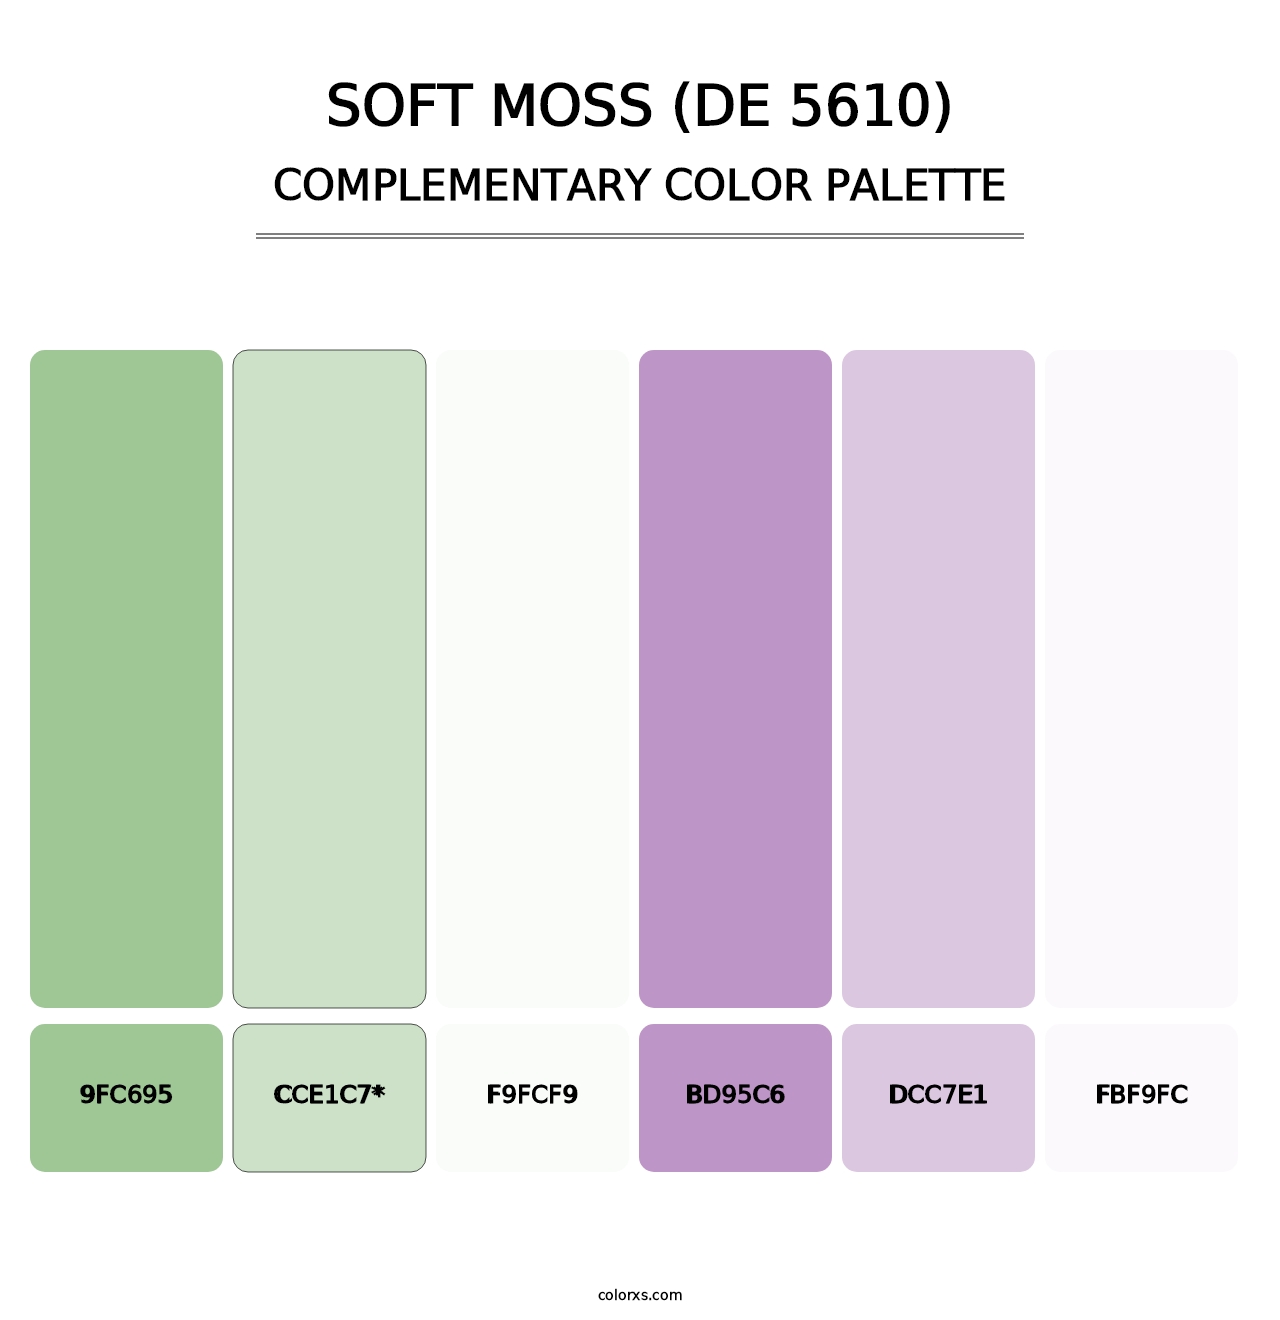 Soft Moss (DE 5610) - Complementary Color Palette